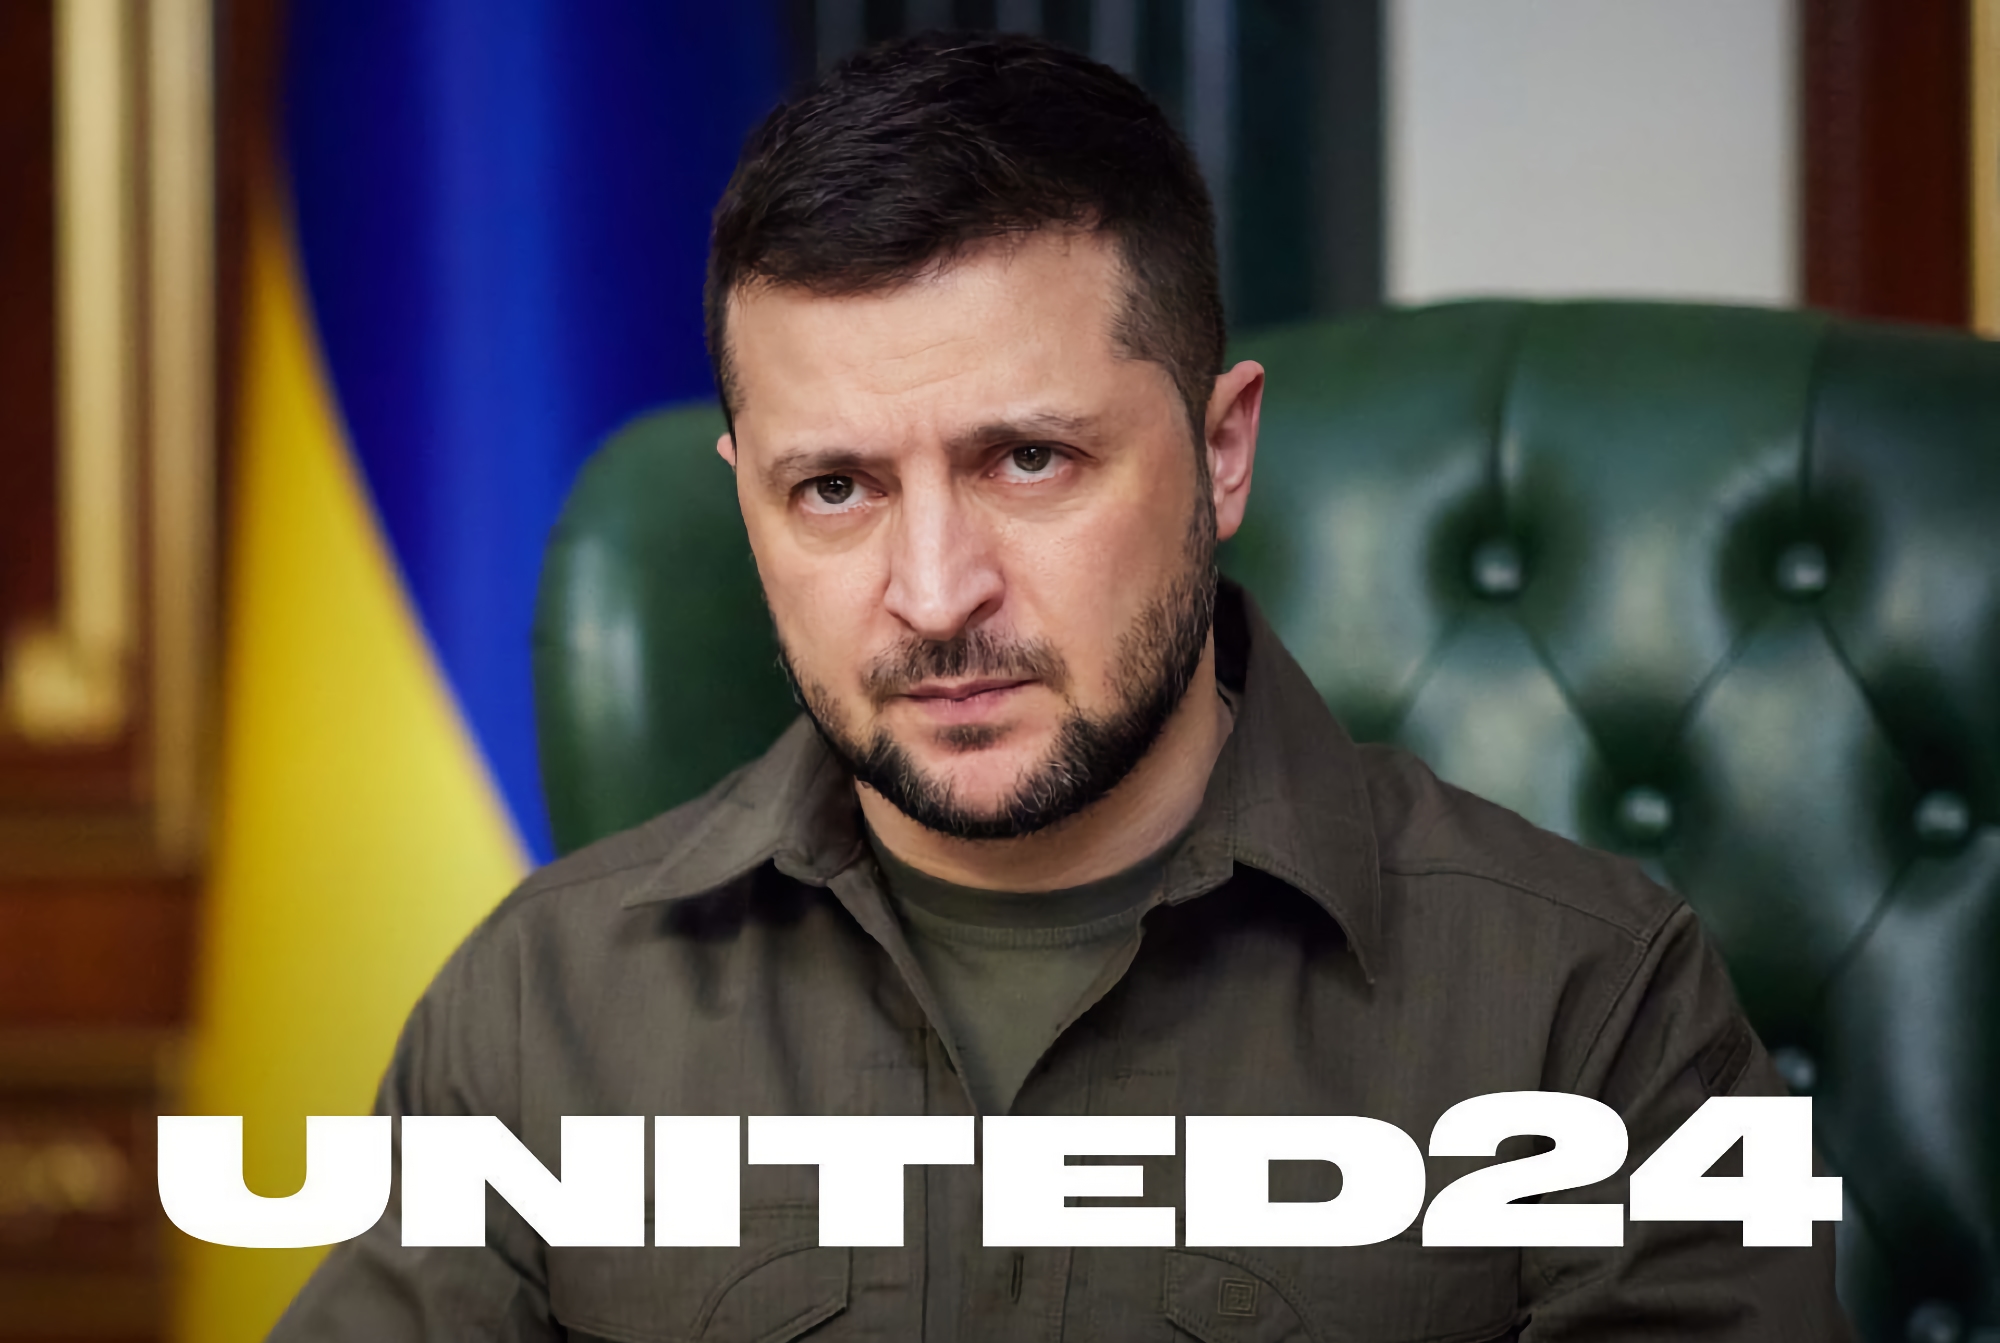 Volodymyr Zelenskyy anunció United24: una plataforma única para recaudar fondos para apoyar a Ucrania